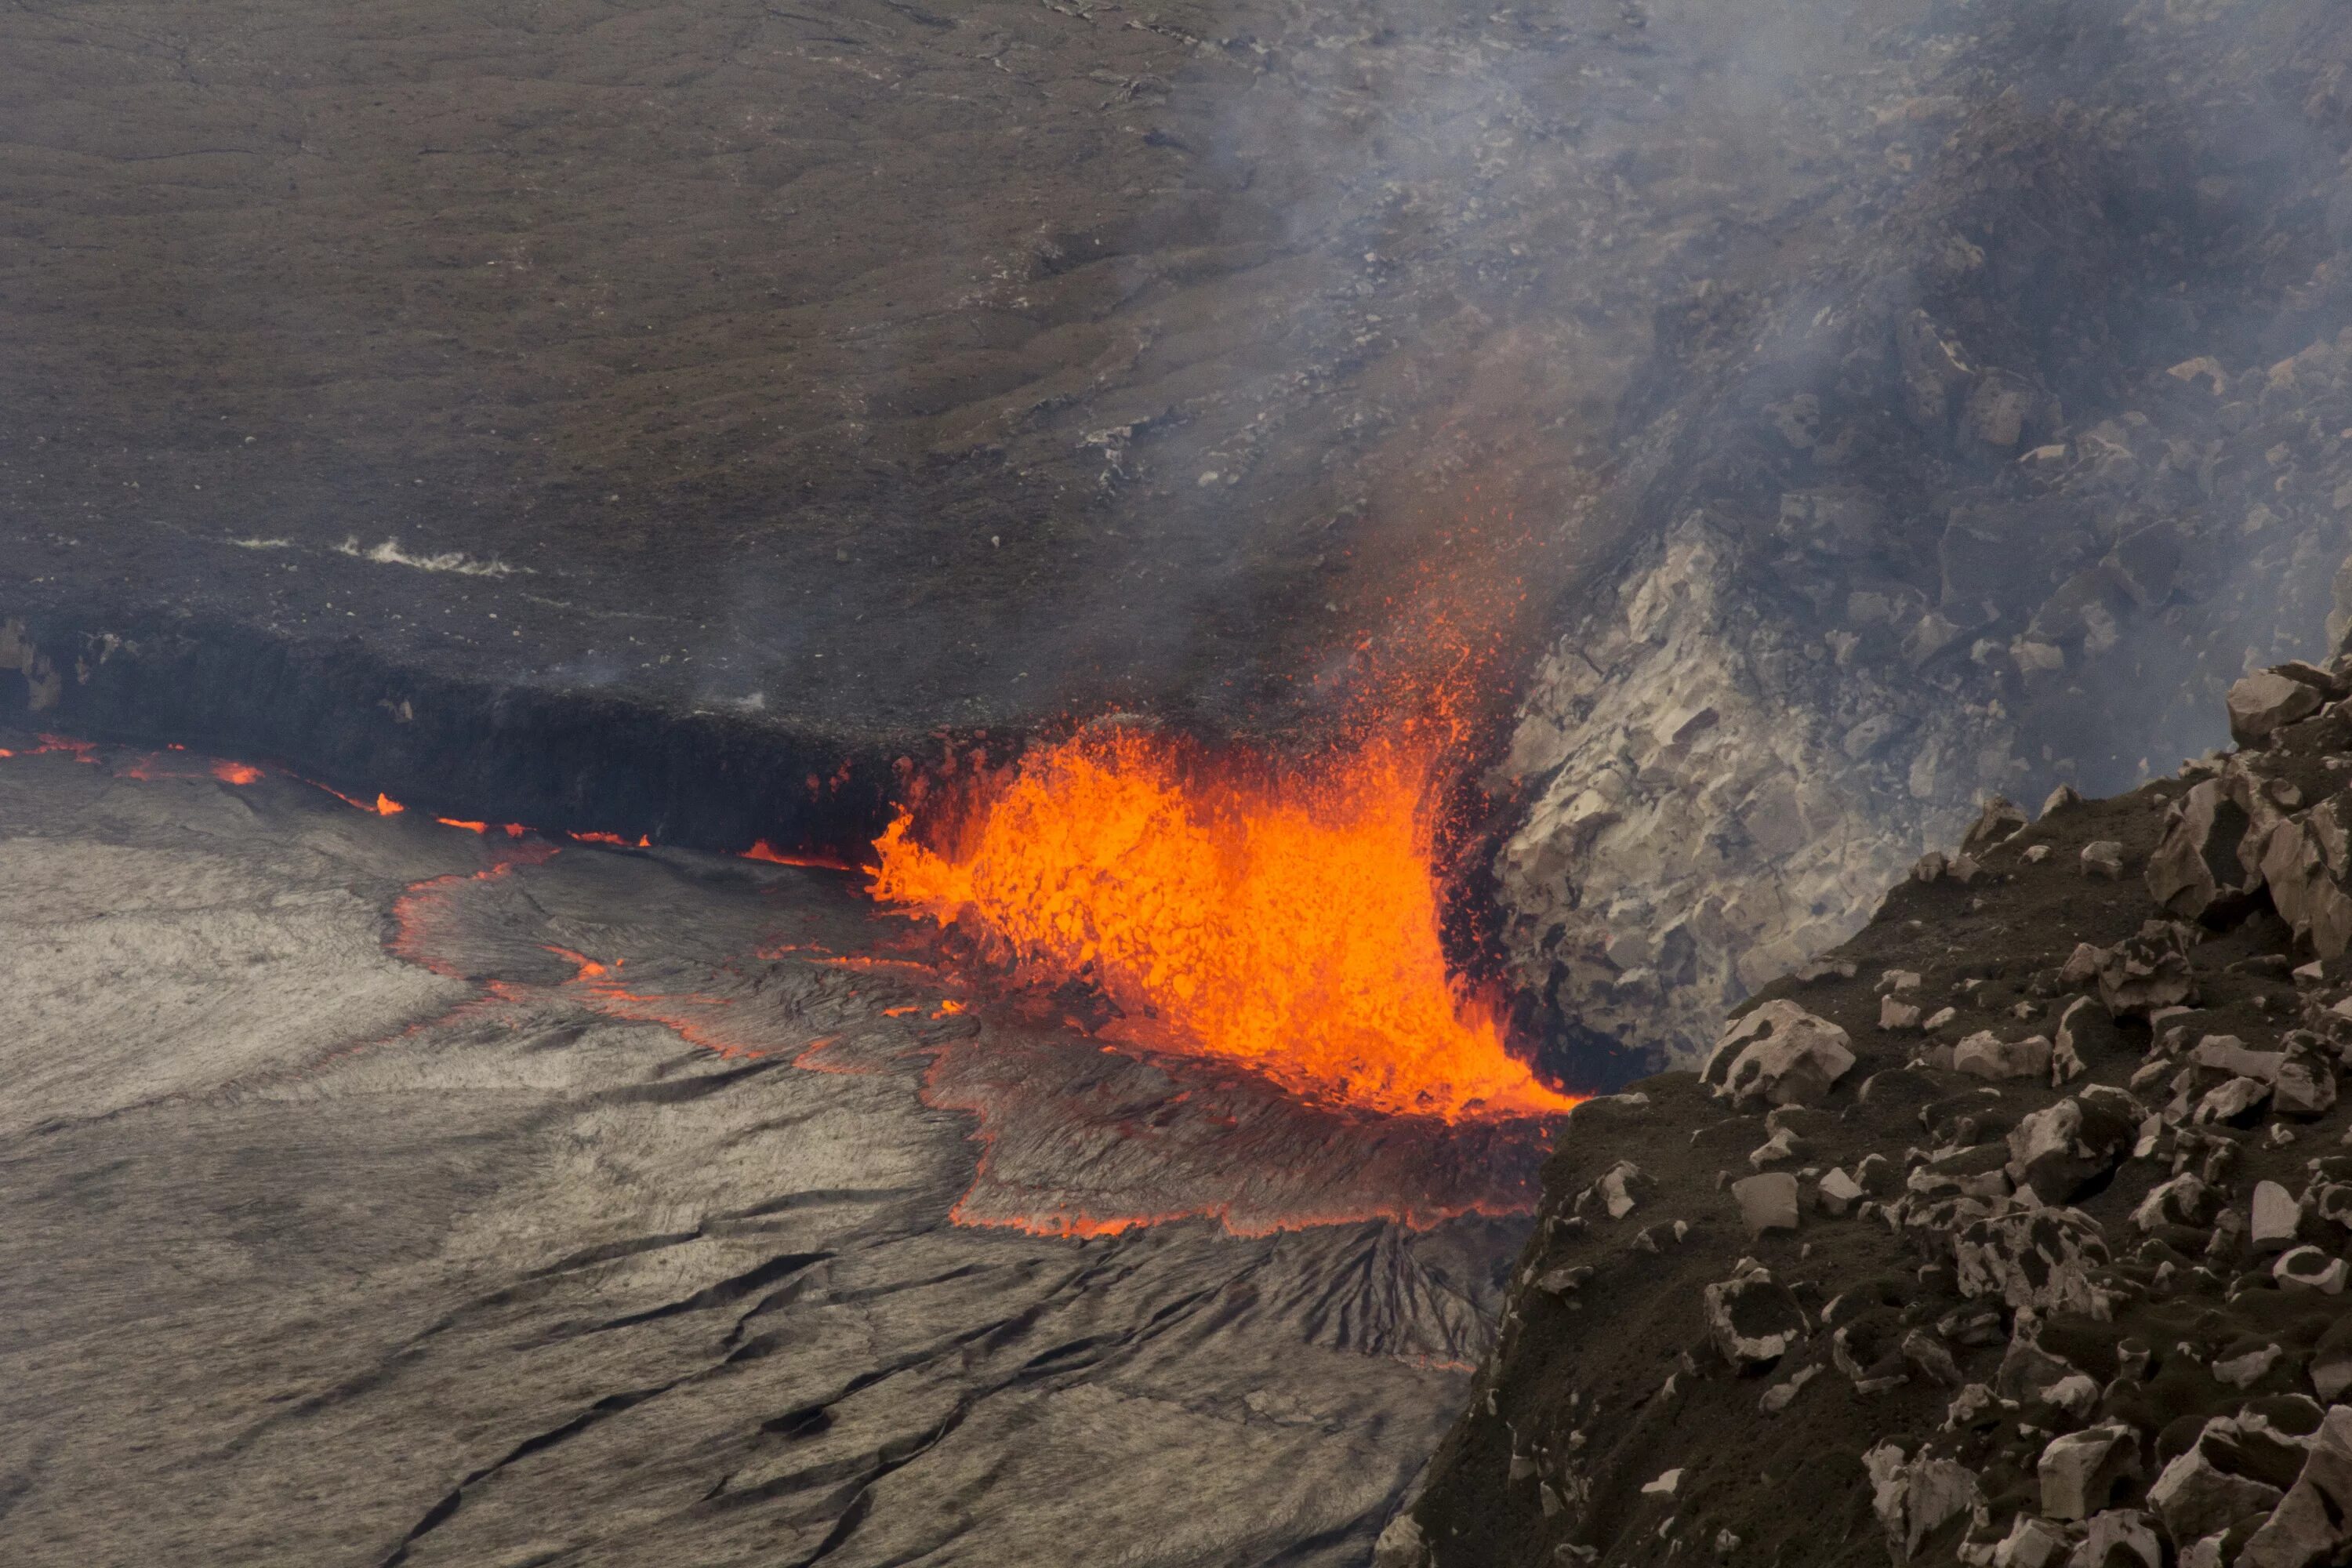 Сильные землетрясения извержения вулканов мощные гейзеры. Лавовое озеро Гавайи. Вулкан Килауэа. Землетрясение и извержение вулкана. Вулканы гавайского типа магма.